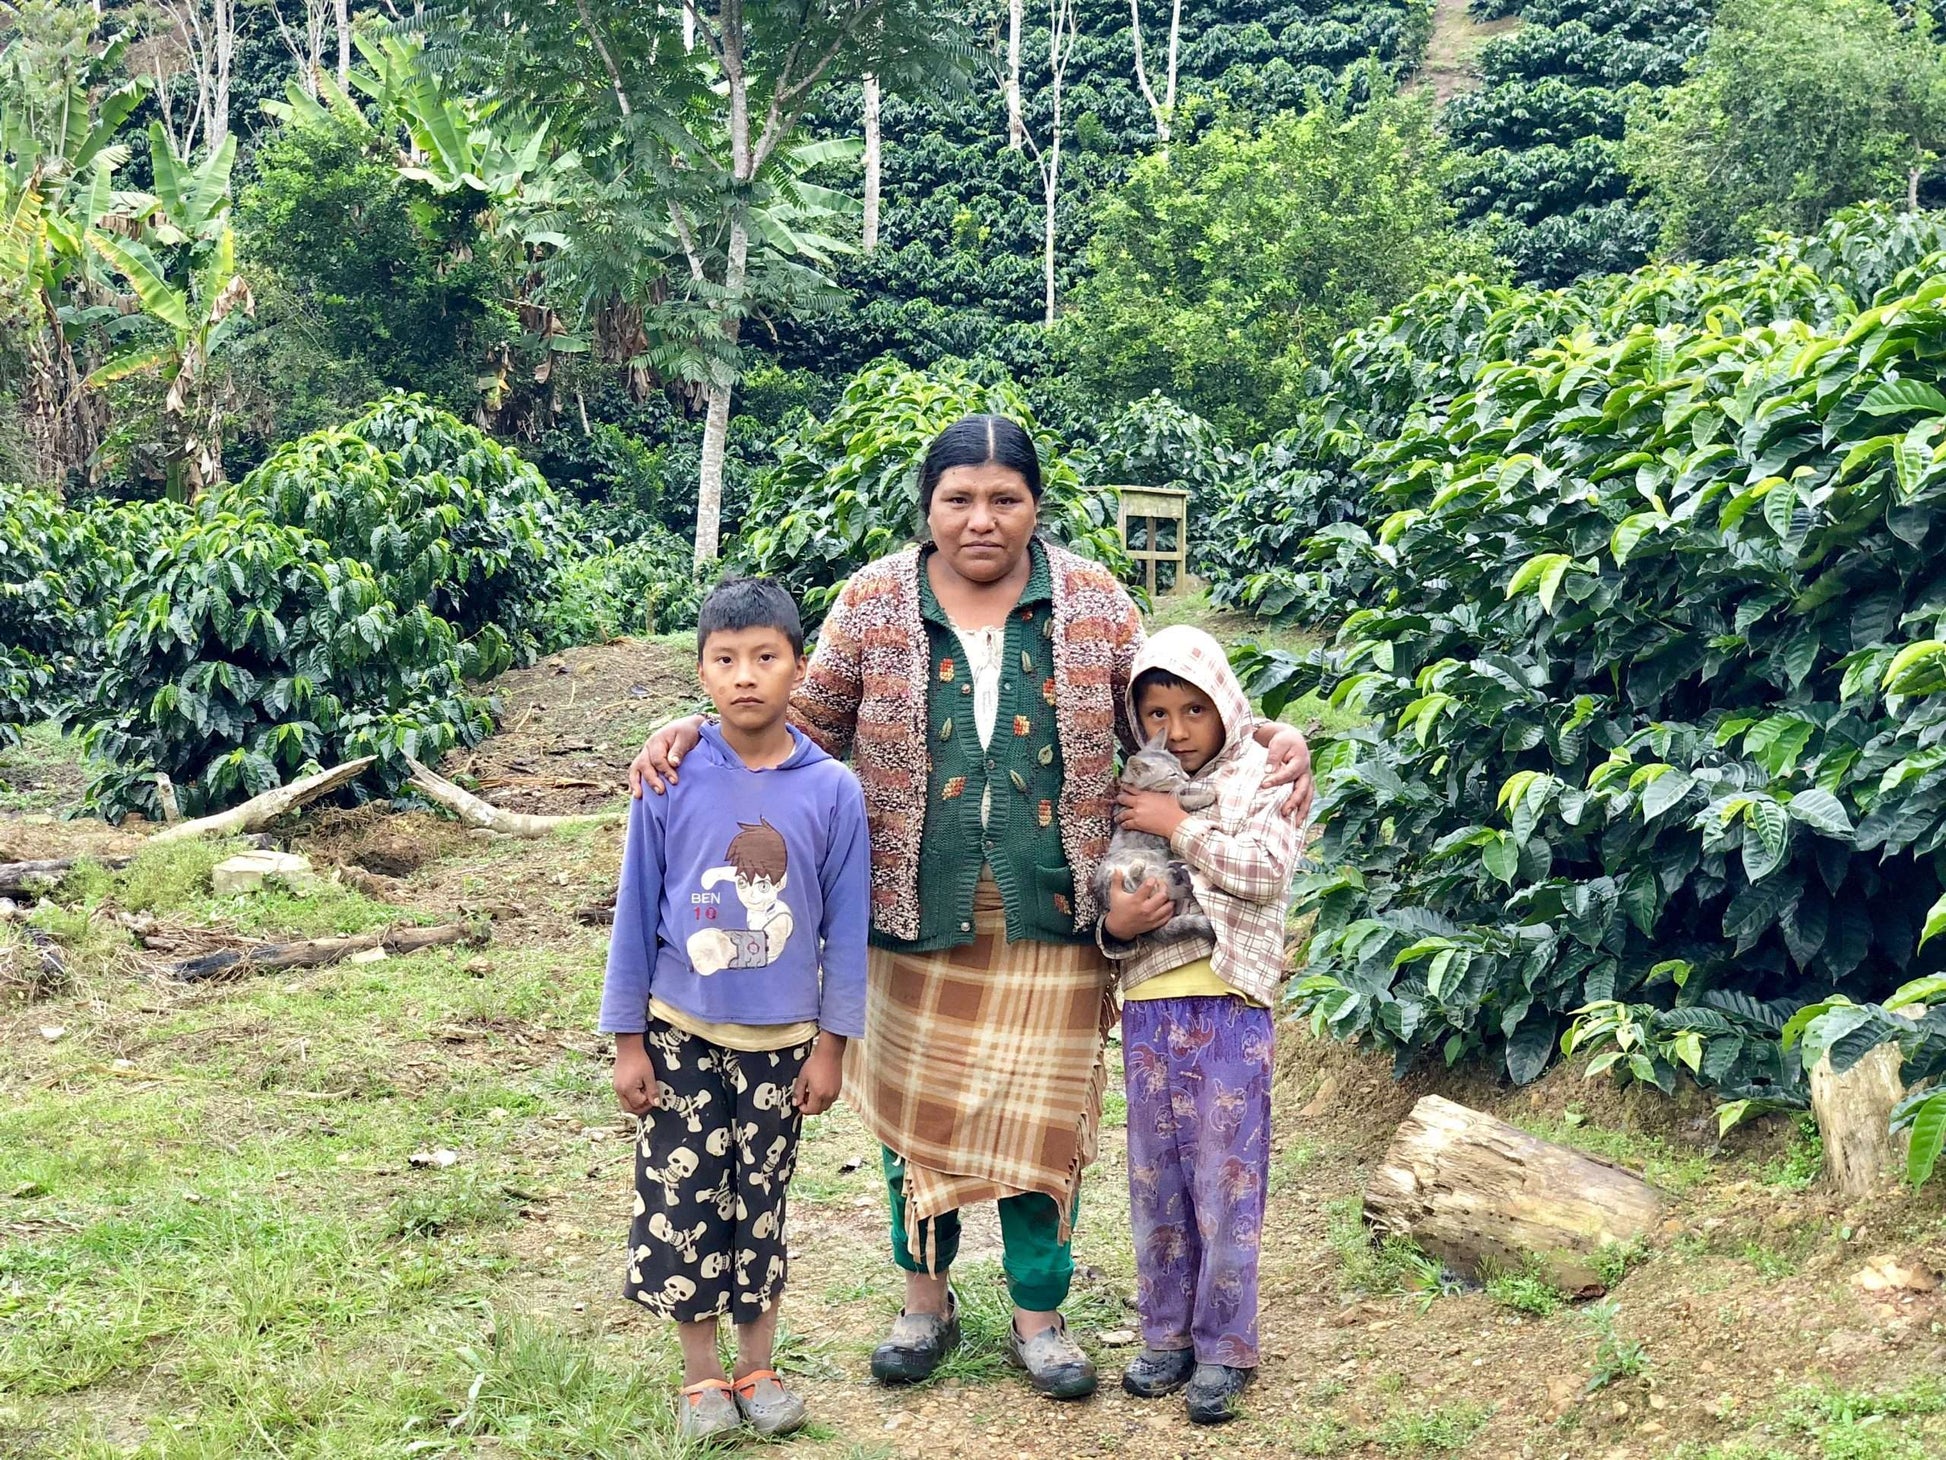 Coffee producer Bolivia